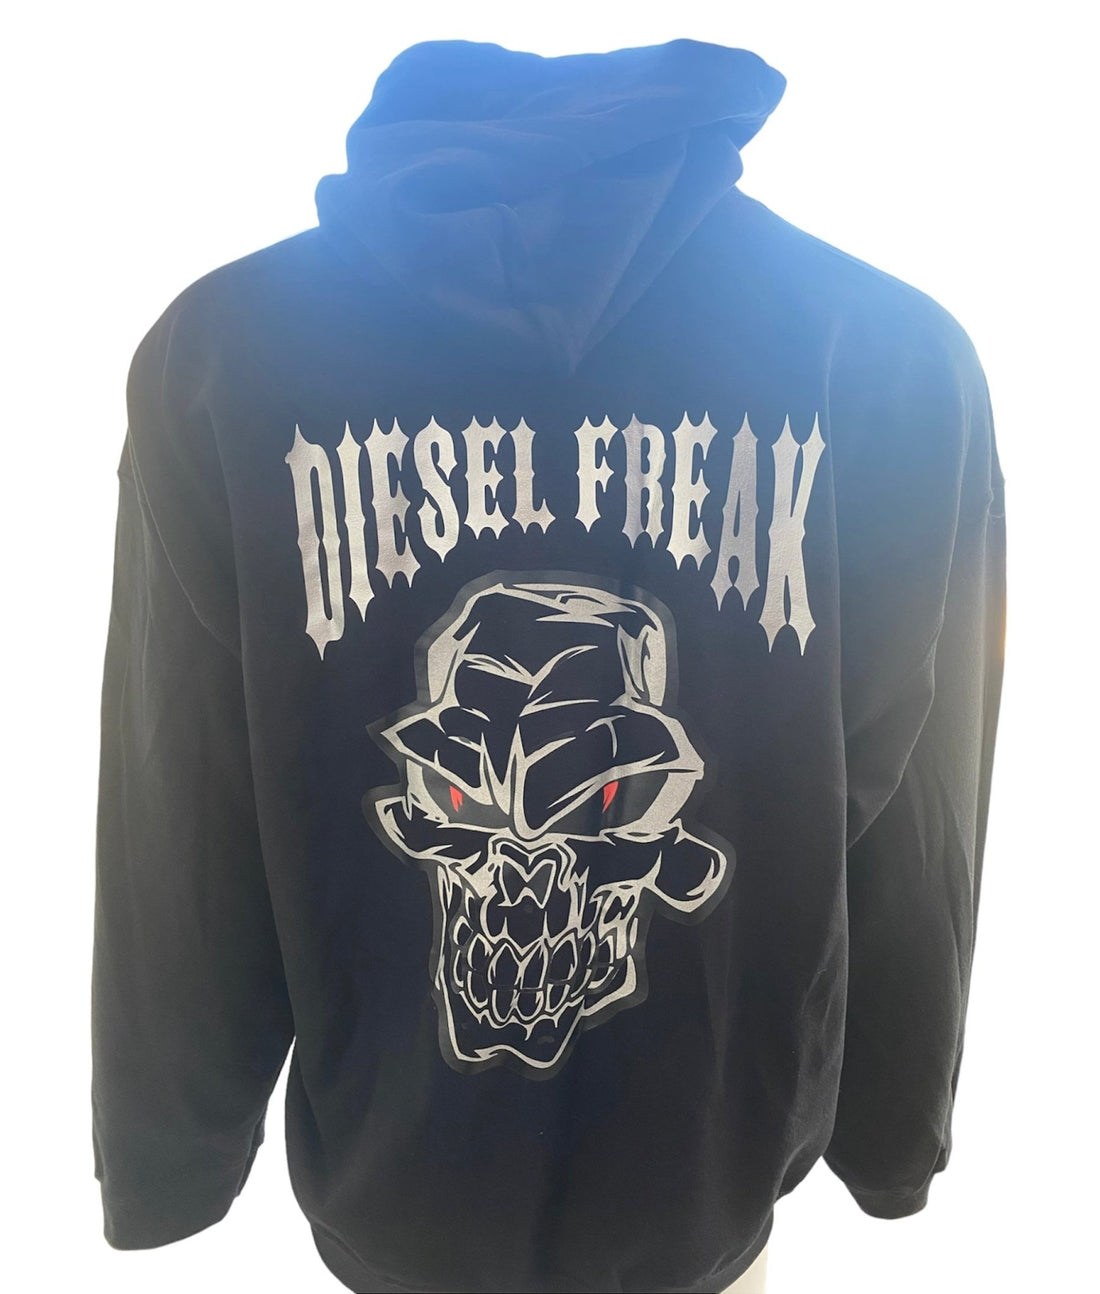 Metallic Skully Hoodie - Diesel Freak